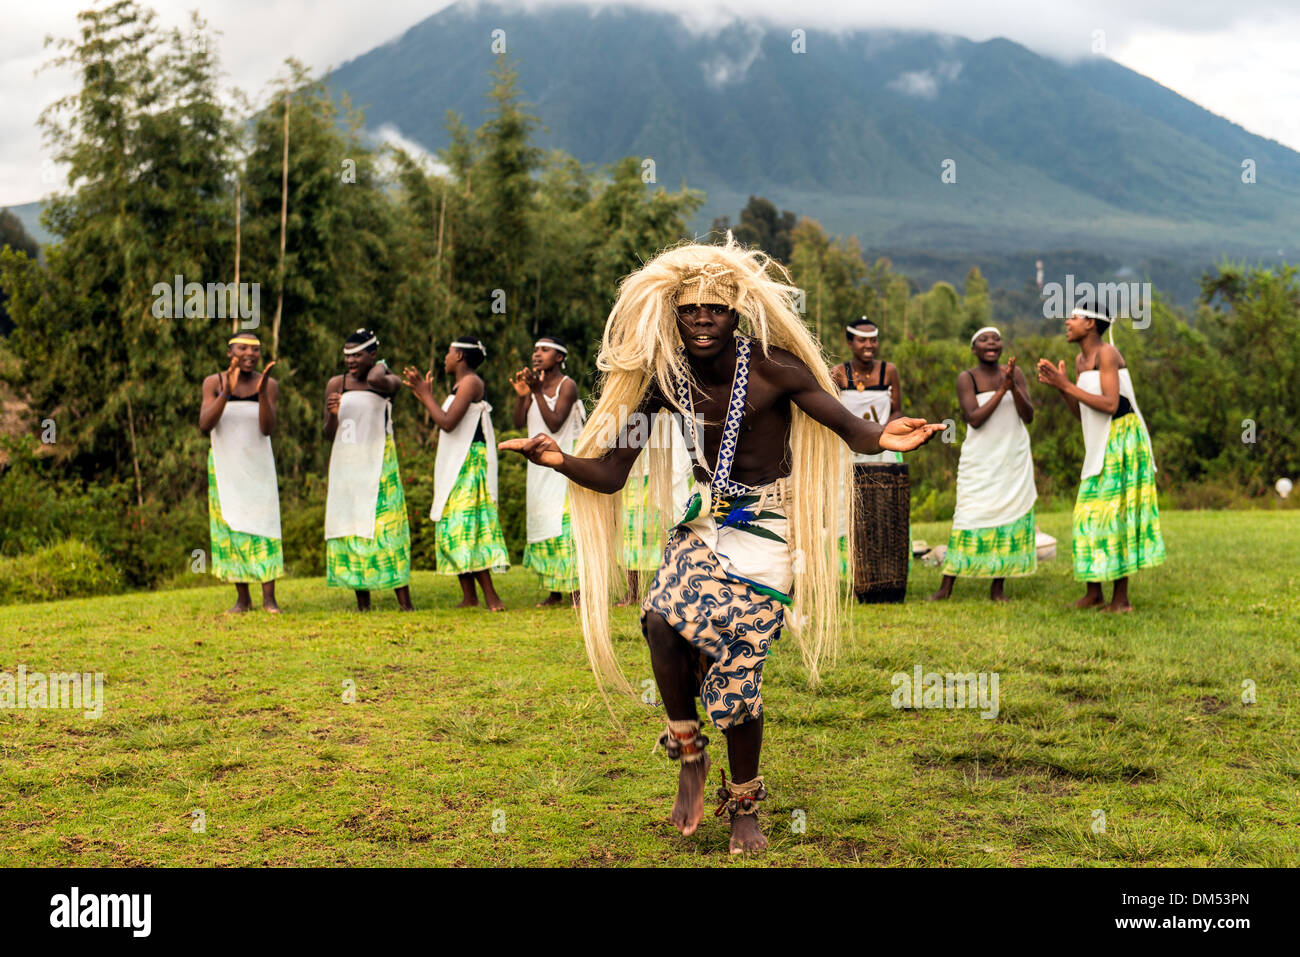 Des danseurs traditionnels africains Parc national des volcans, Rwanda Afrique du Sud Banque D'Images